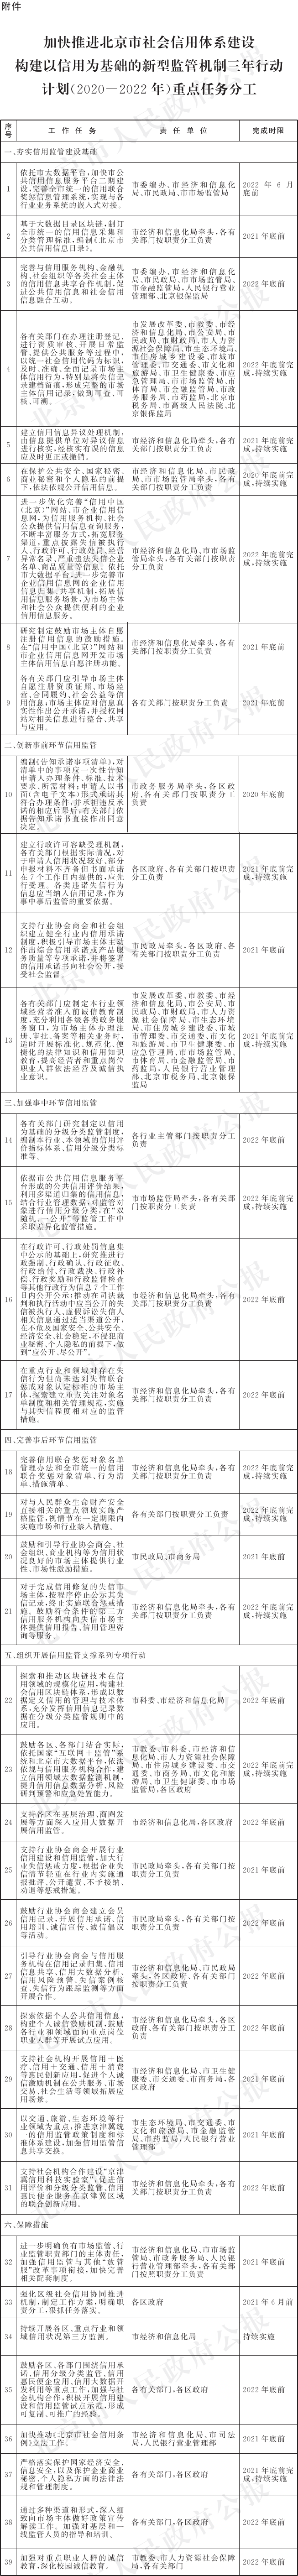 6-附件：加快推進北京市社會信用體系建設構建以信用為基礎的新型監管機制三年行動計劃(2020-2022年)重點任務分工.png